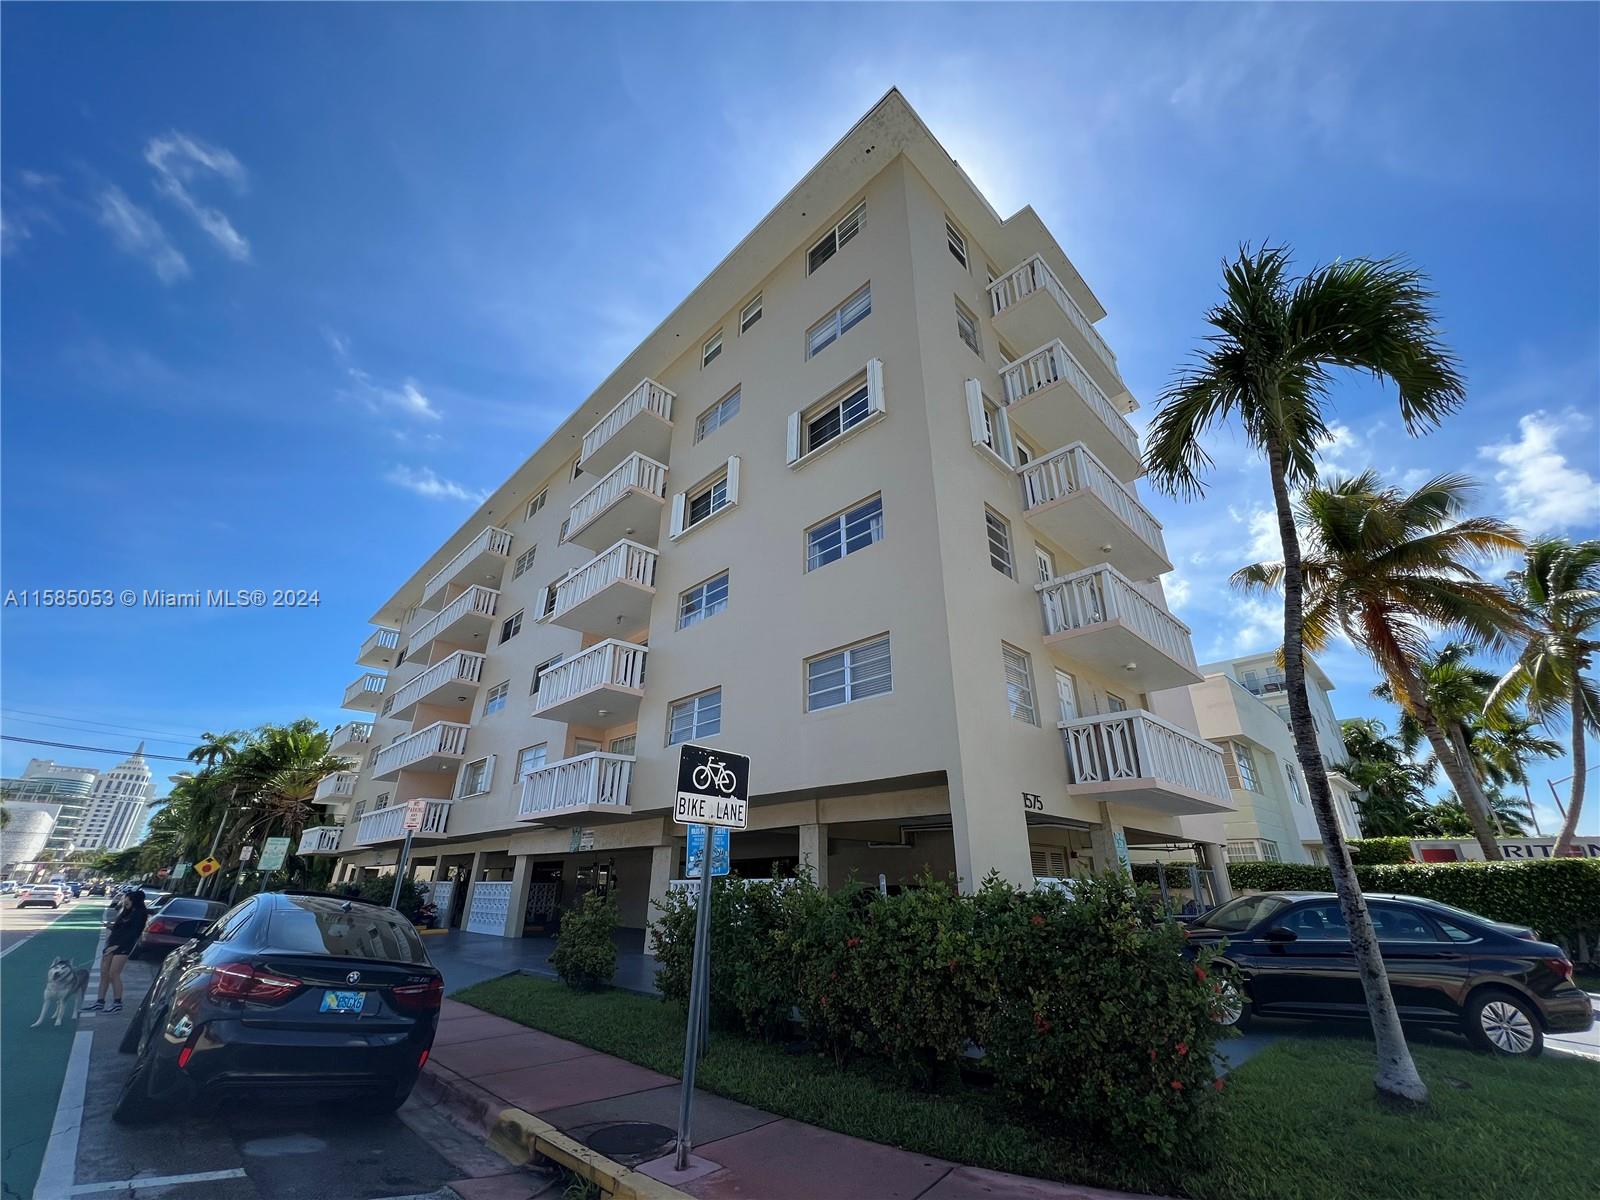 Rental Property at 1575 Euclid Ave 505, Miami Beach, Miami-Dade County, Florida - Bedrooms: 1 
Bathrooms: 1  - $2,400 MO.